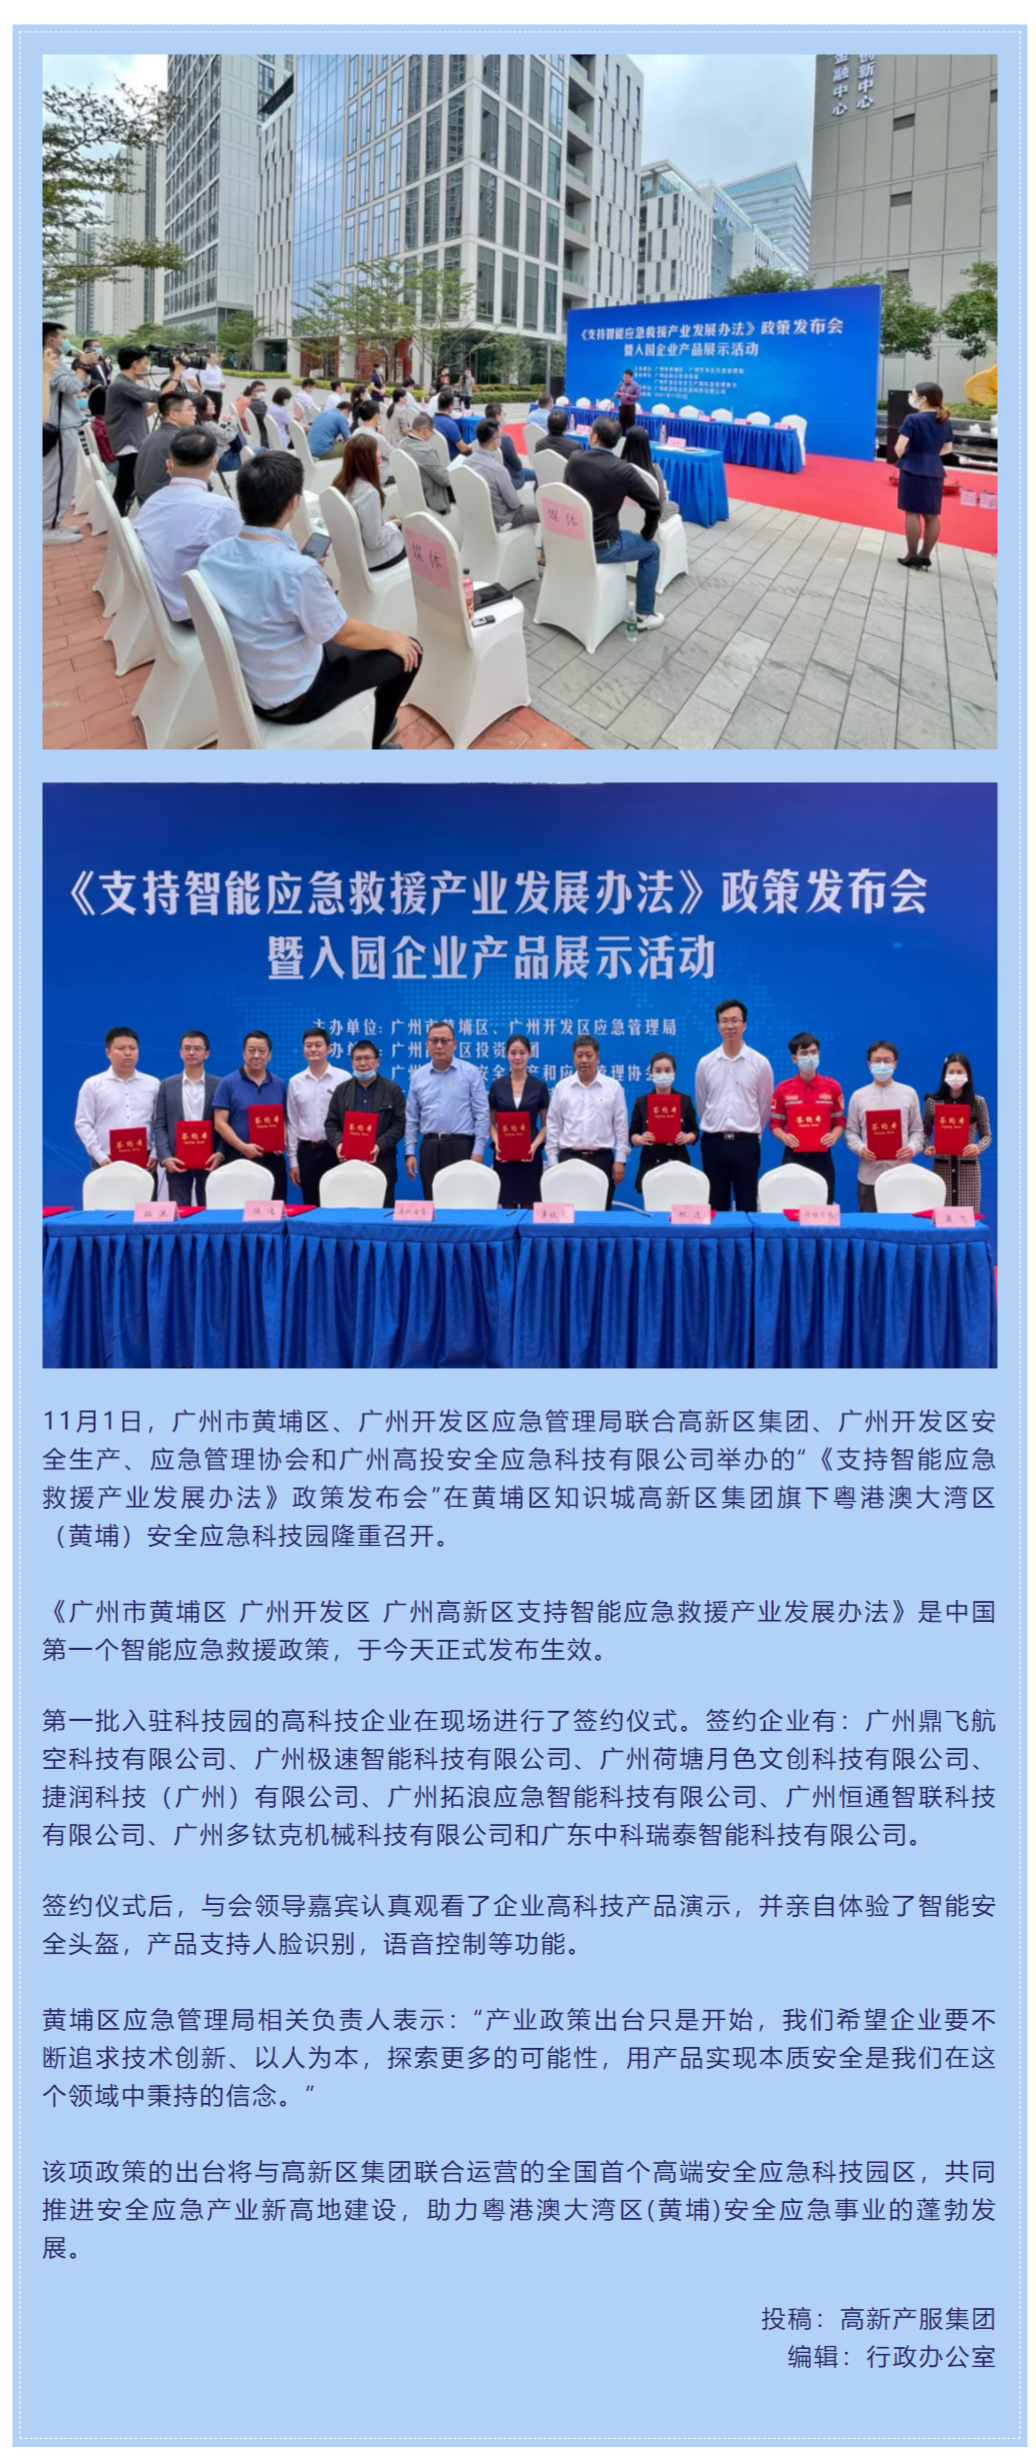 FireShot Capture 048 - 全國第一個智能應急救援產業政策在廣州黃埔發布 - mp.weixin.qq.com.png